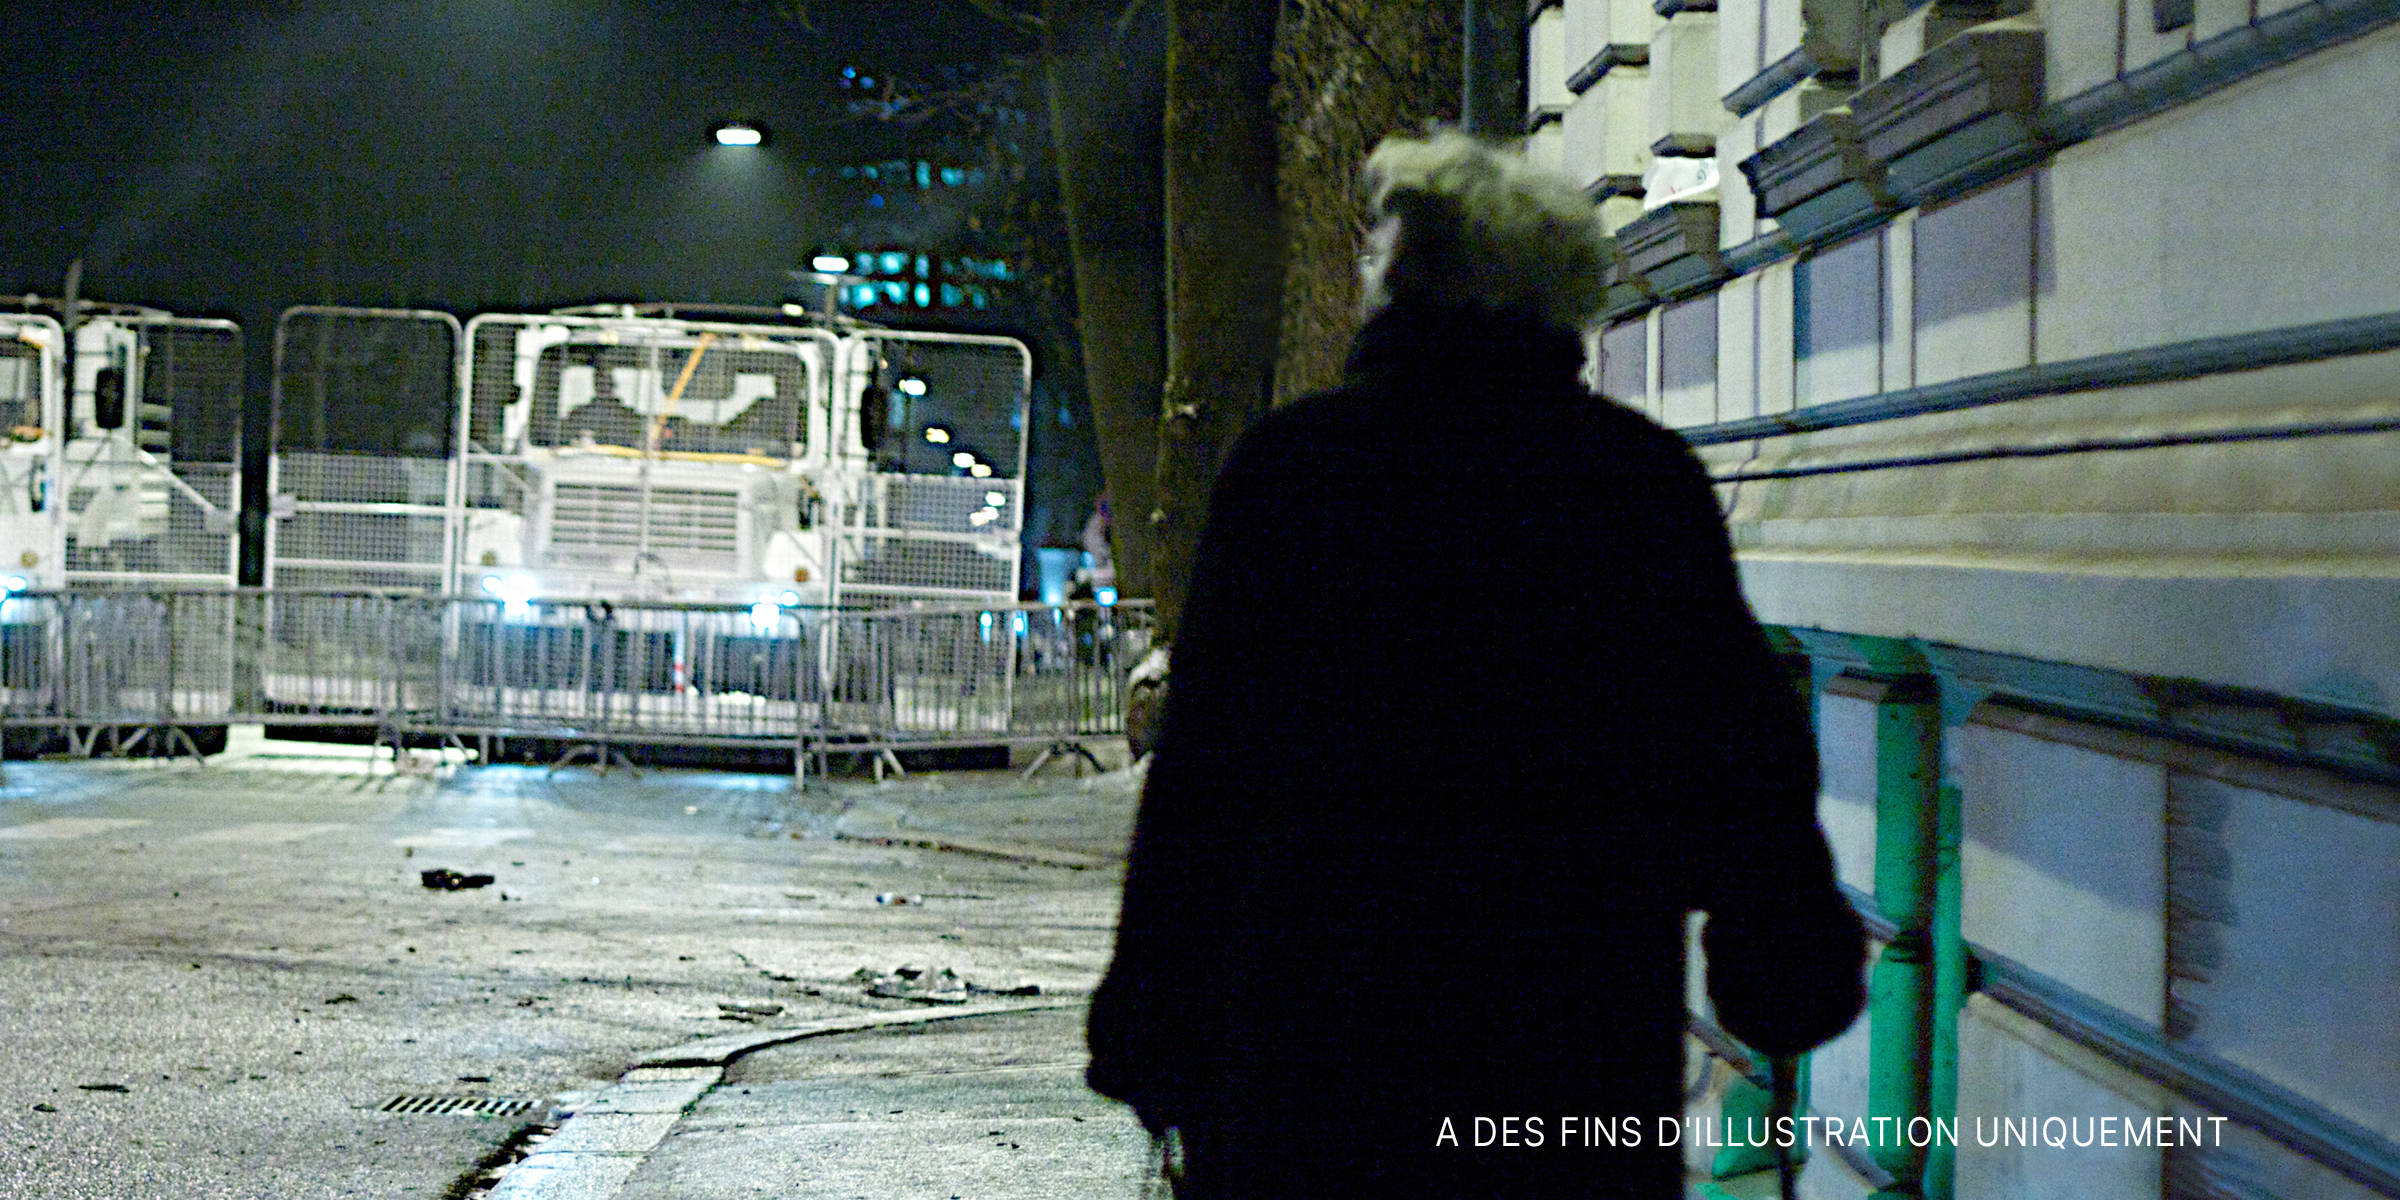 Une personne marchant dans une rue la nuit | Source : Flickr/Egil Fujikawa Nes (CC BY 2.0)